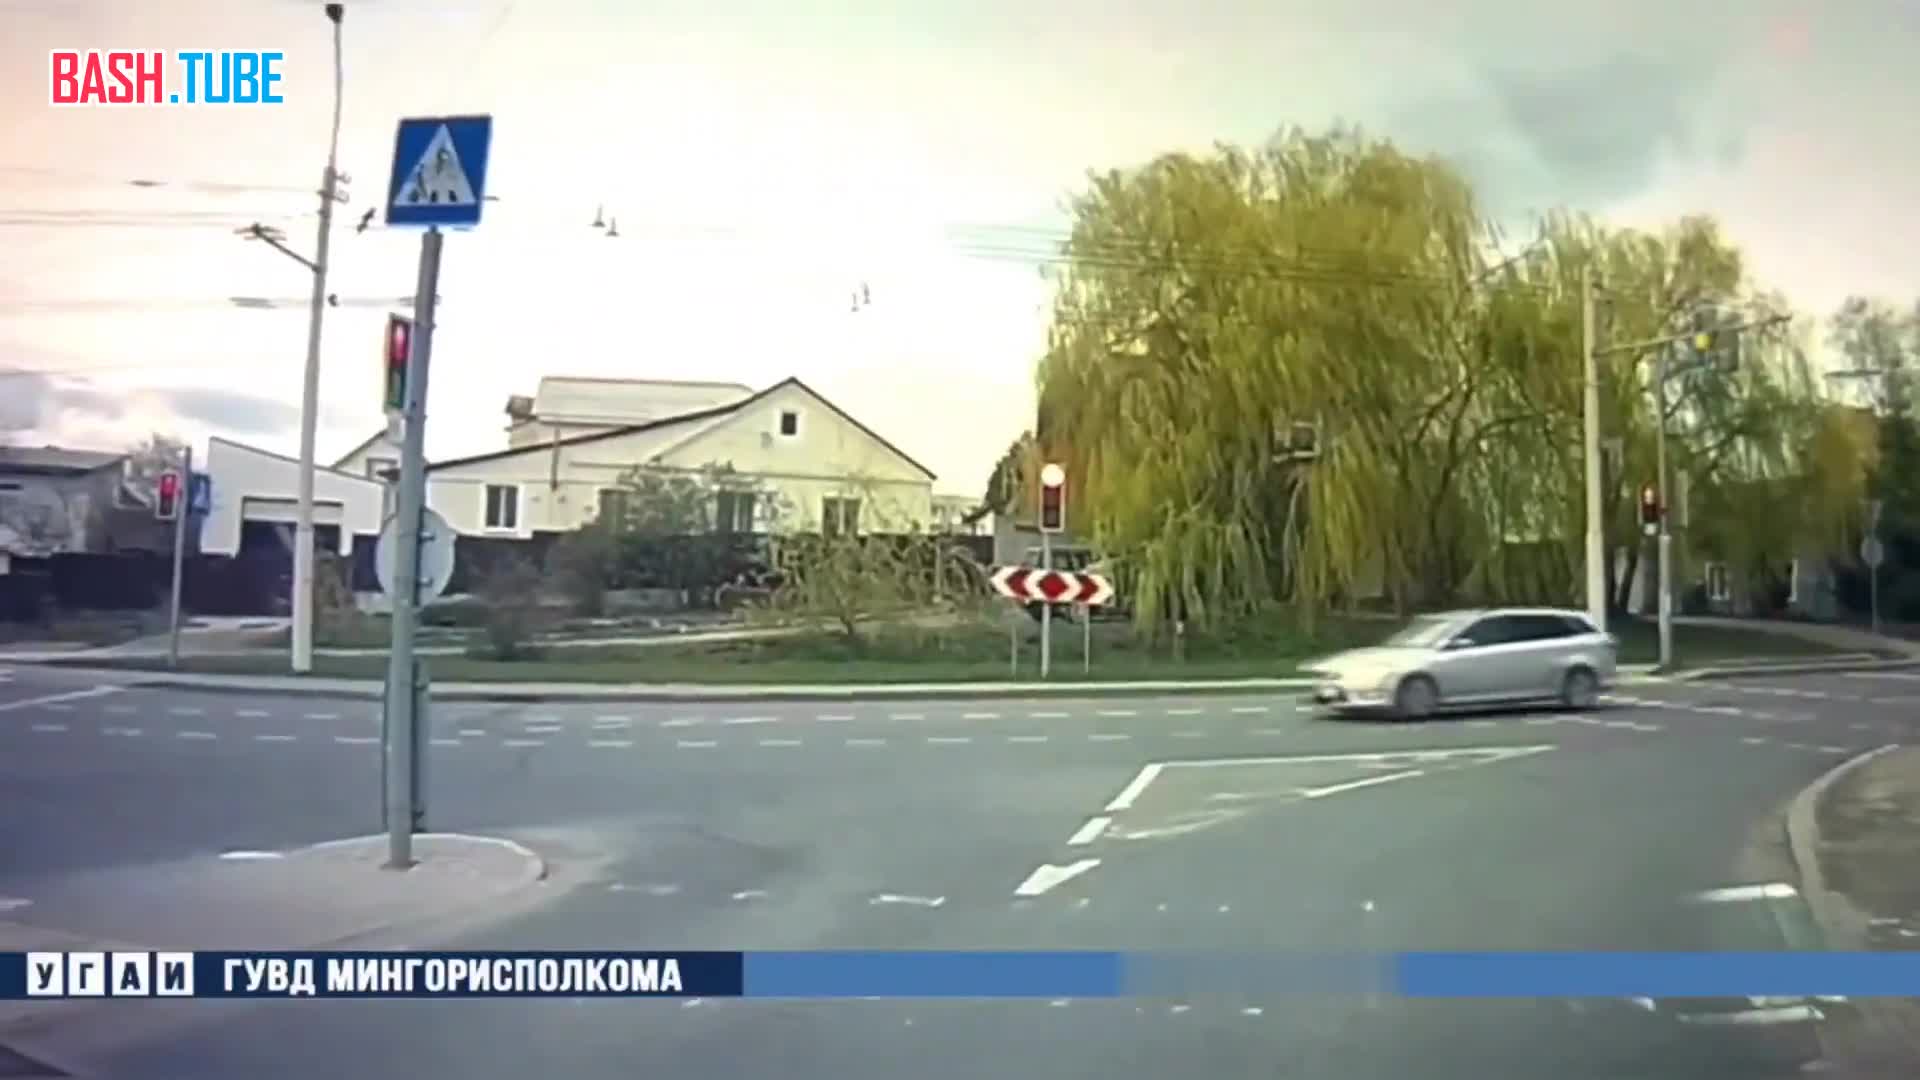 ⁣ В Минске (Беларусь) мотоциклисты уже летают на дорогах: байкер жестко столкнулся с Ford